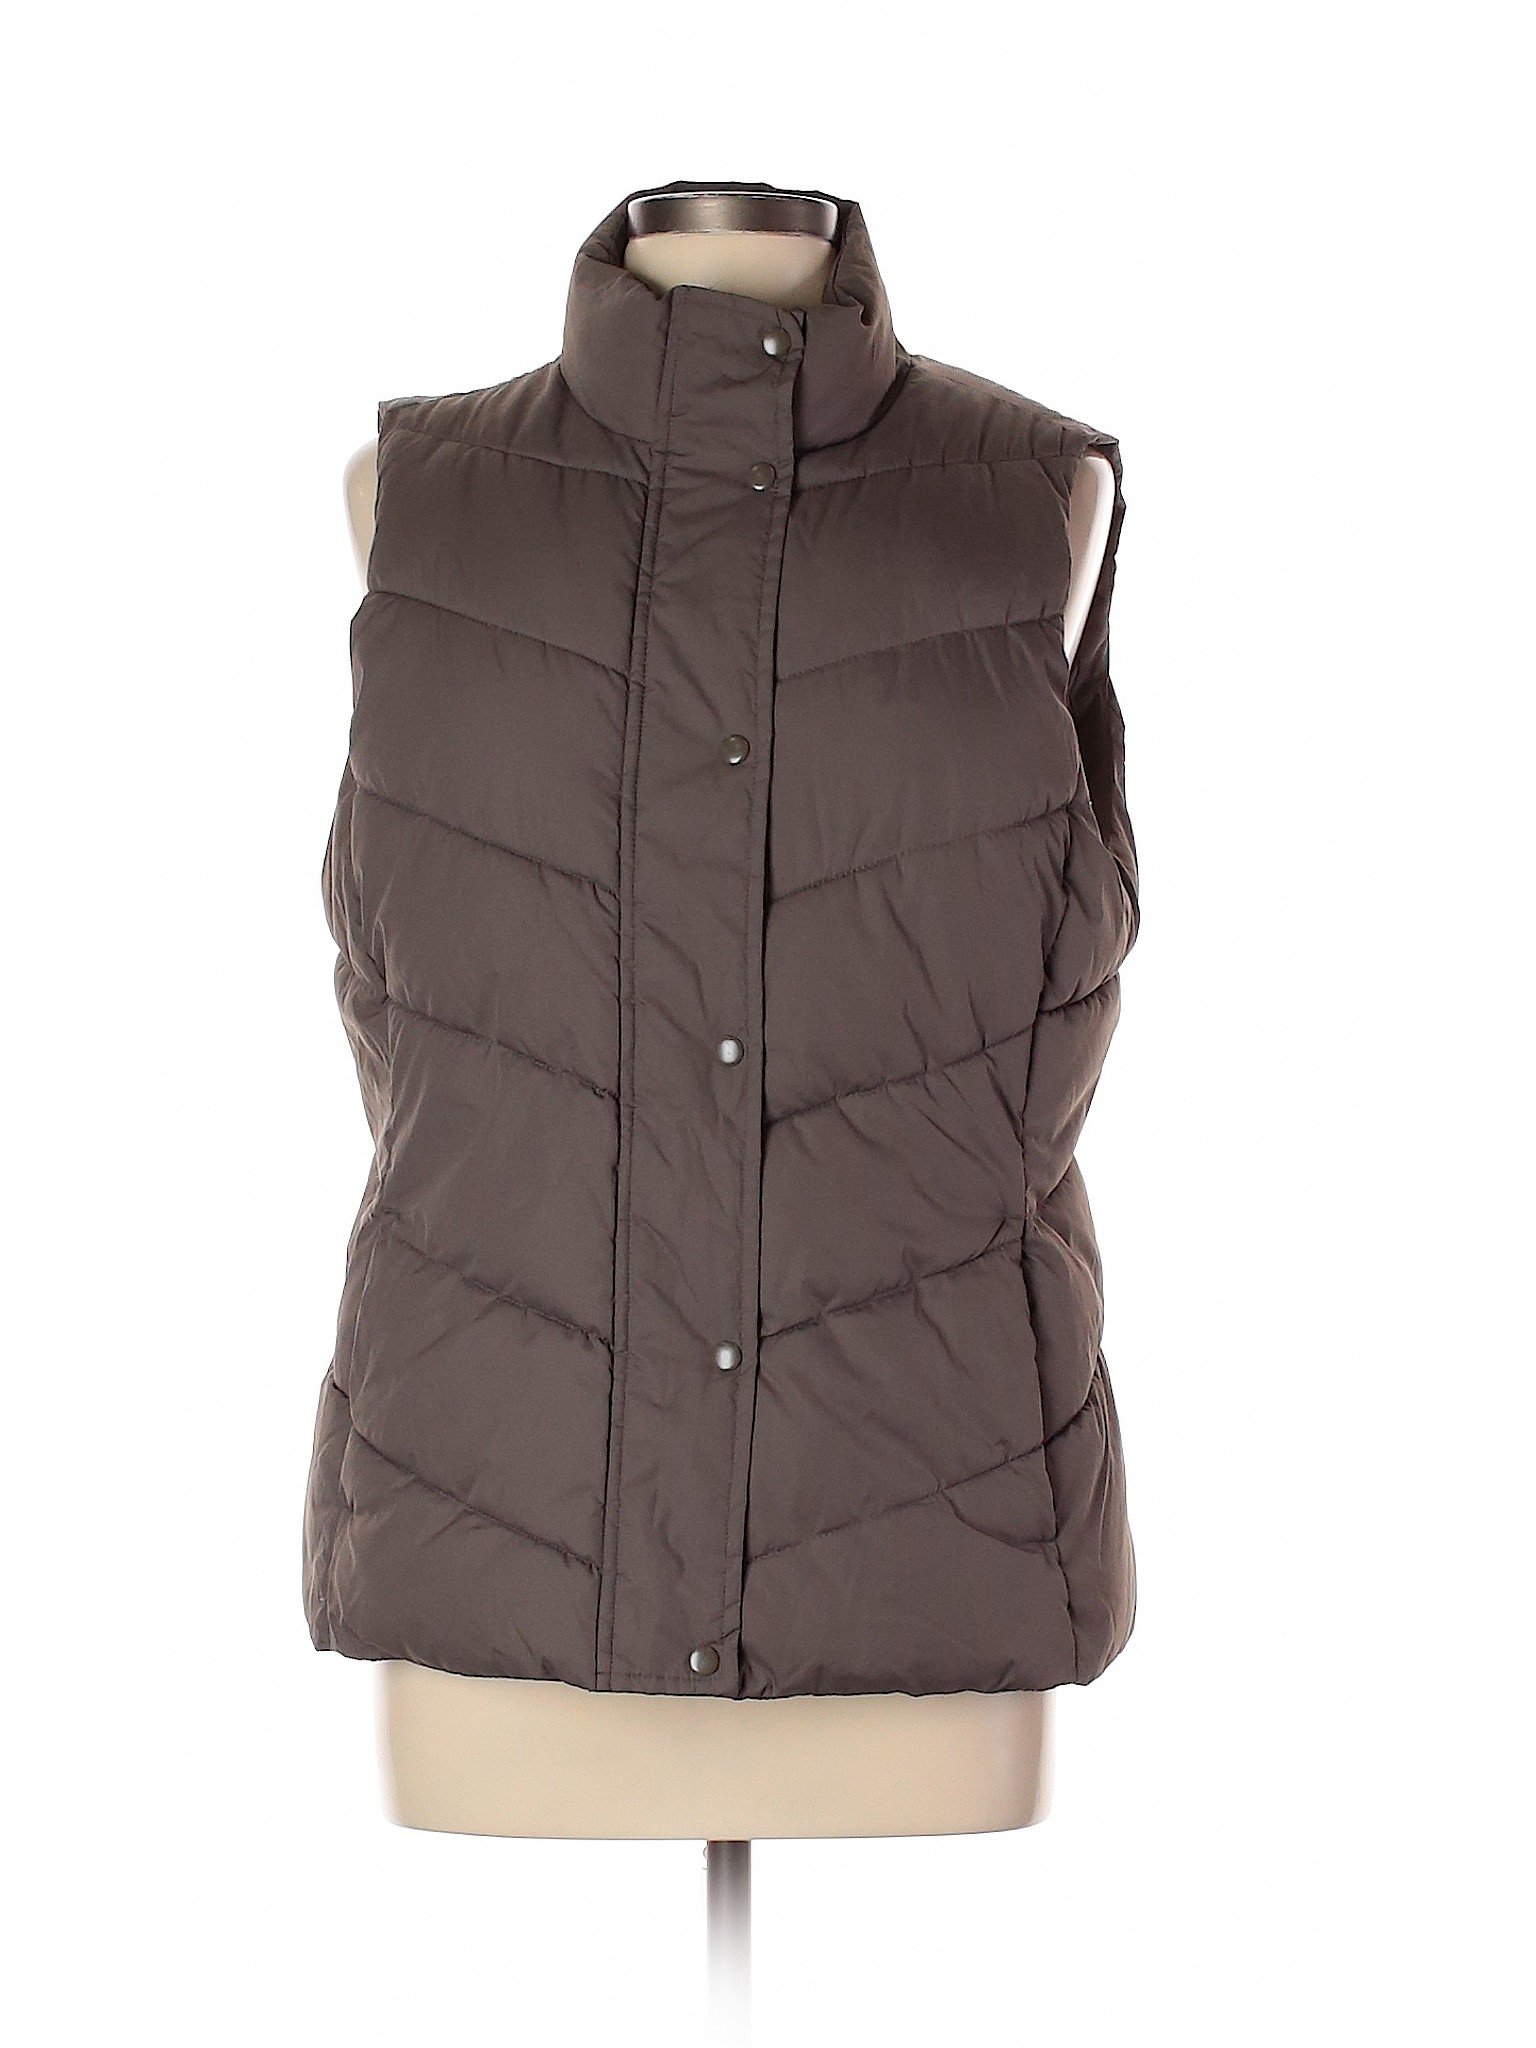 Gap Outlet Women Brown Vest L | eBay